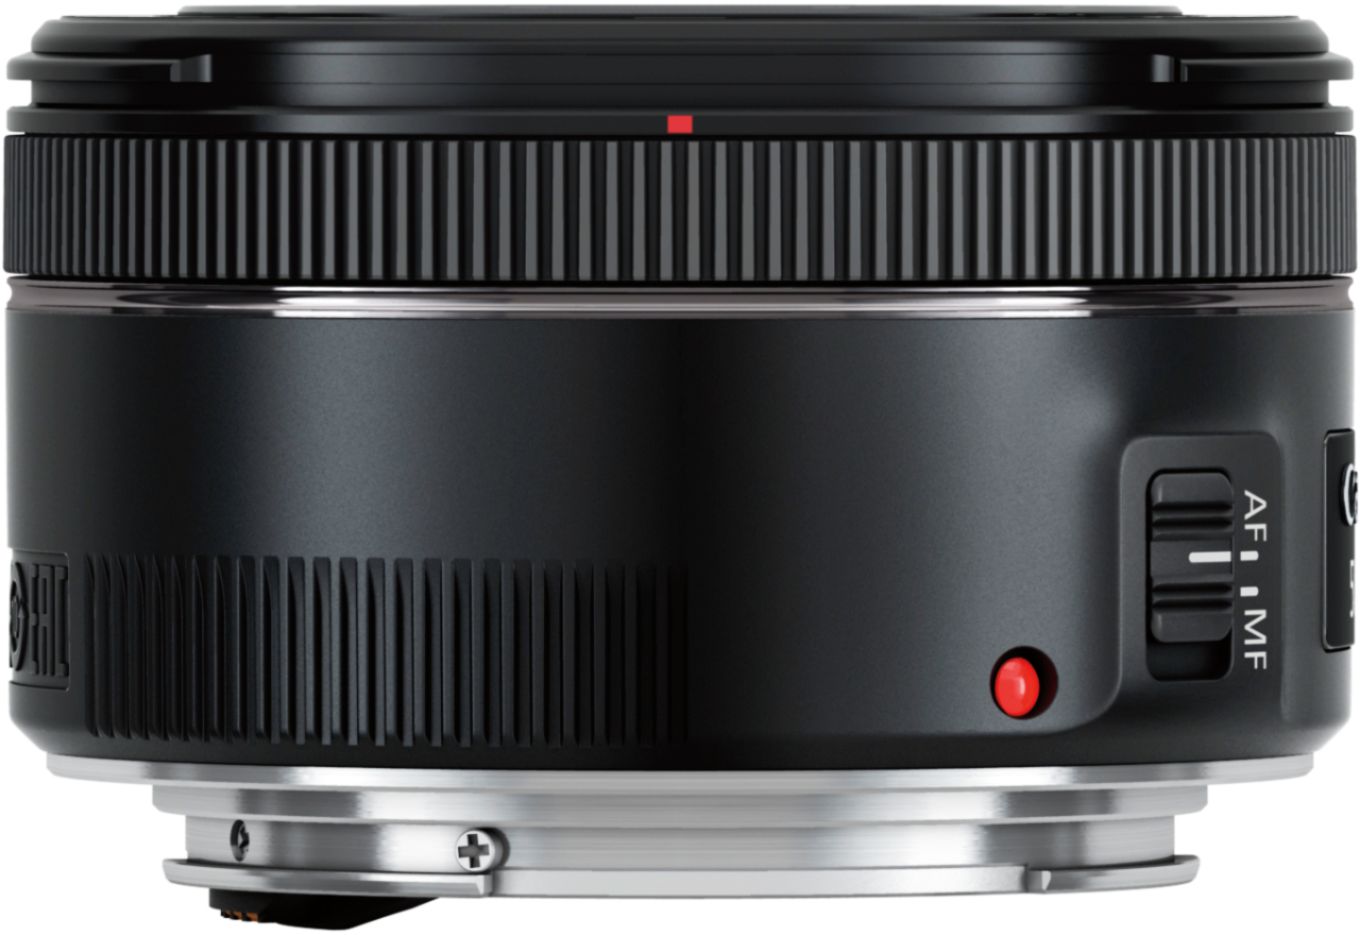 Canon EF50mm F1.8 STM Standard Prime Lens for EOS DSLR Cameras 